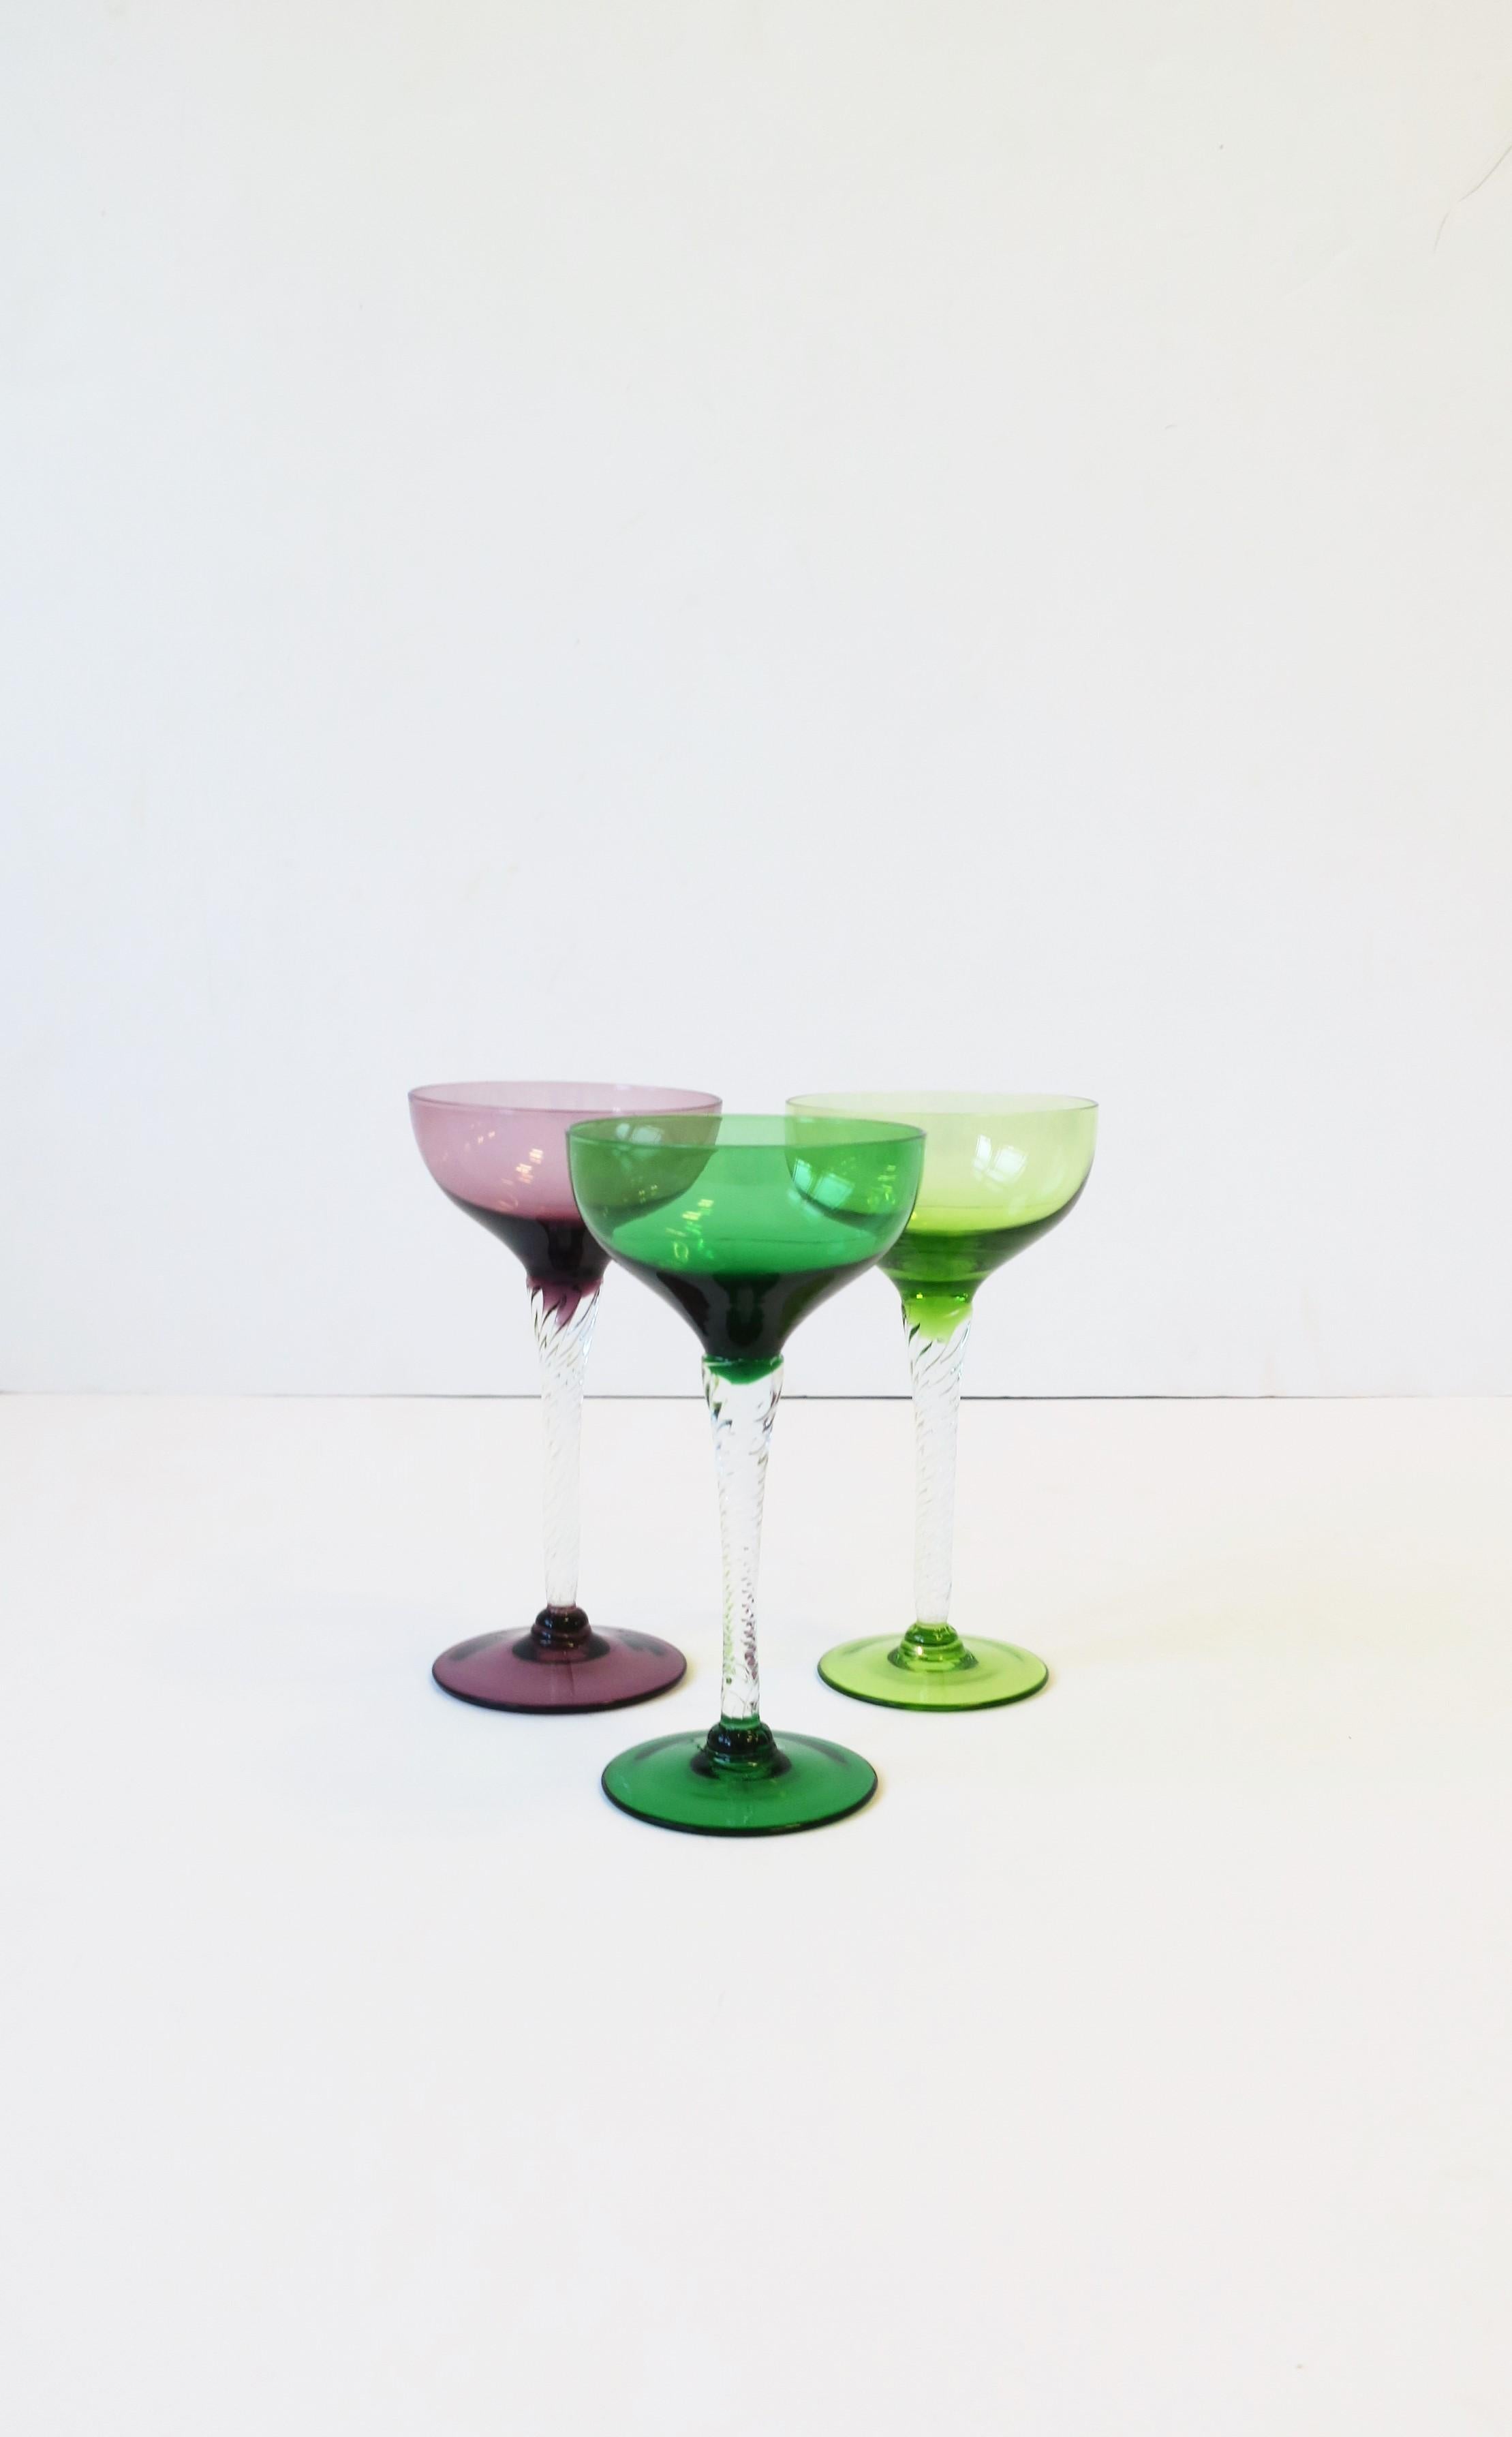 Un magnifique ensemble de trois (3) verres à cocktail ou à champagne en verre soufflé vintage, vert émeraude, vert chartreuse et violet/aubergine, avec une tige torsadée transparente, vers la fin du 20e siècle, Europe, peut-être Italie. Un ensemble